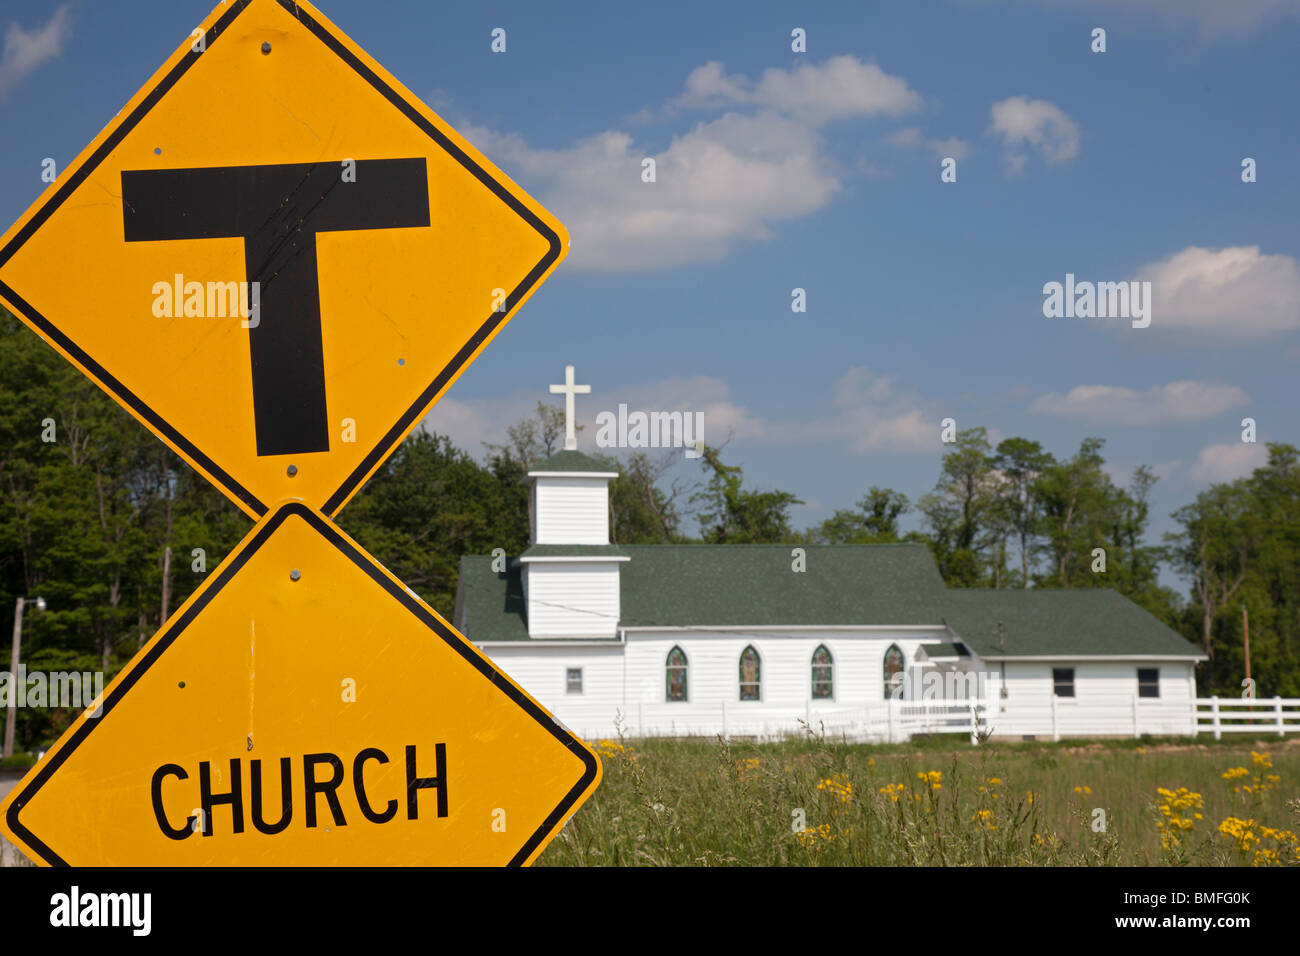 Osgood, Indiana - l'église de la communauté de Cedar Creek sur une route de campagne dans le sud-est de l'Indiana. Banque D'Images